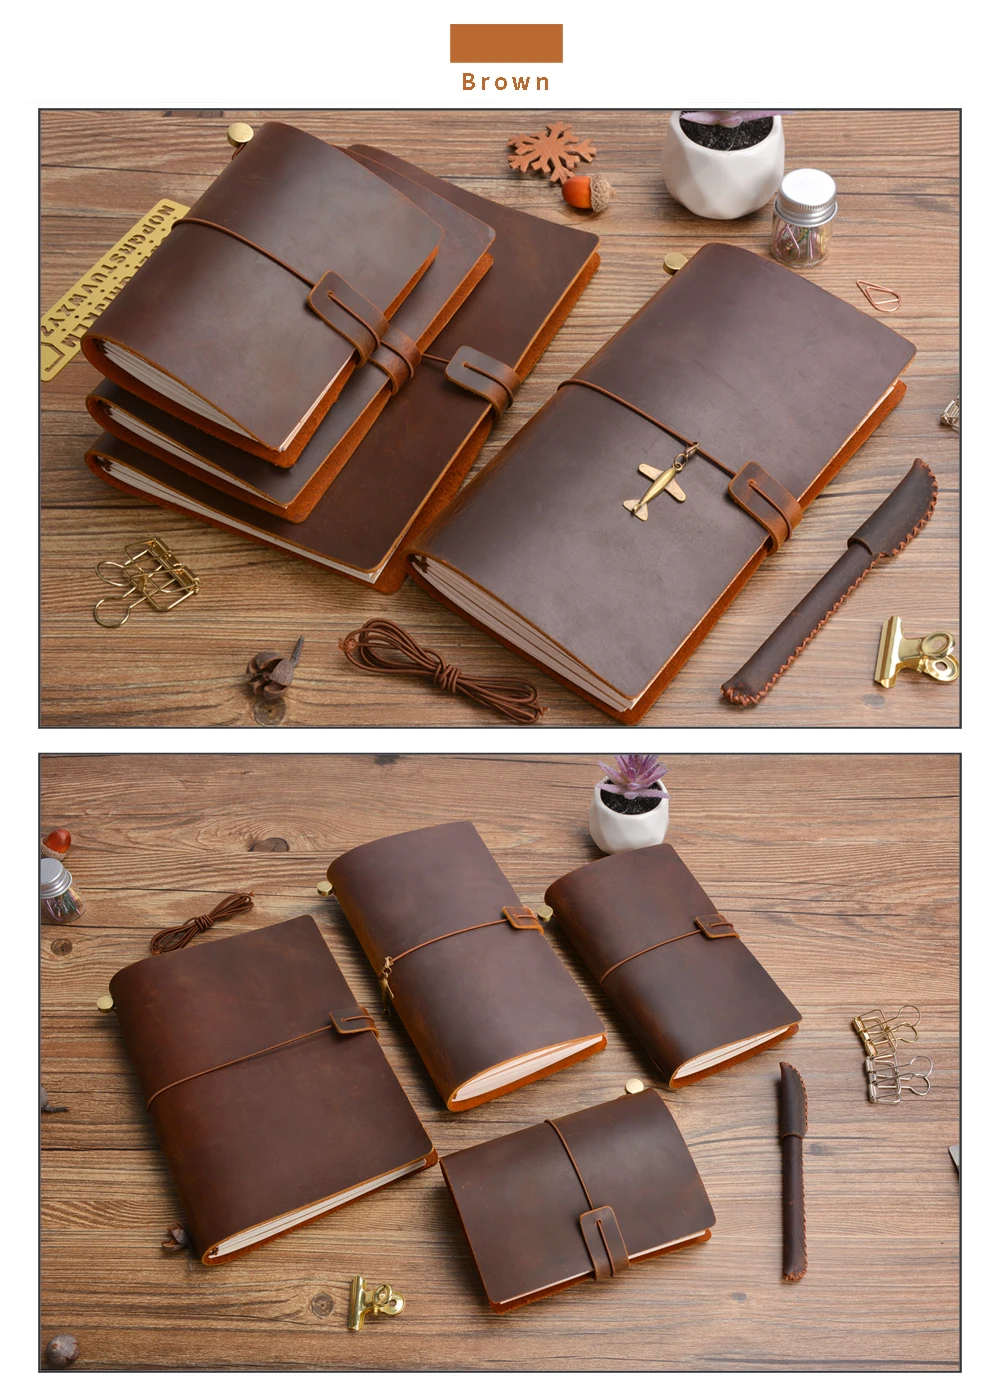 Hot Sale 100% Genuine Leather Notebook Handmade Vintage Cowhide Diary Journal Sketchbook Planner Buy 1 Get 11 Accessories Gift